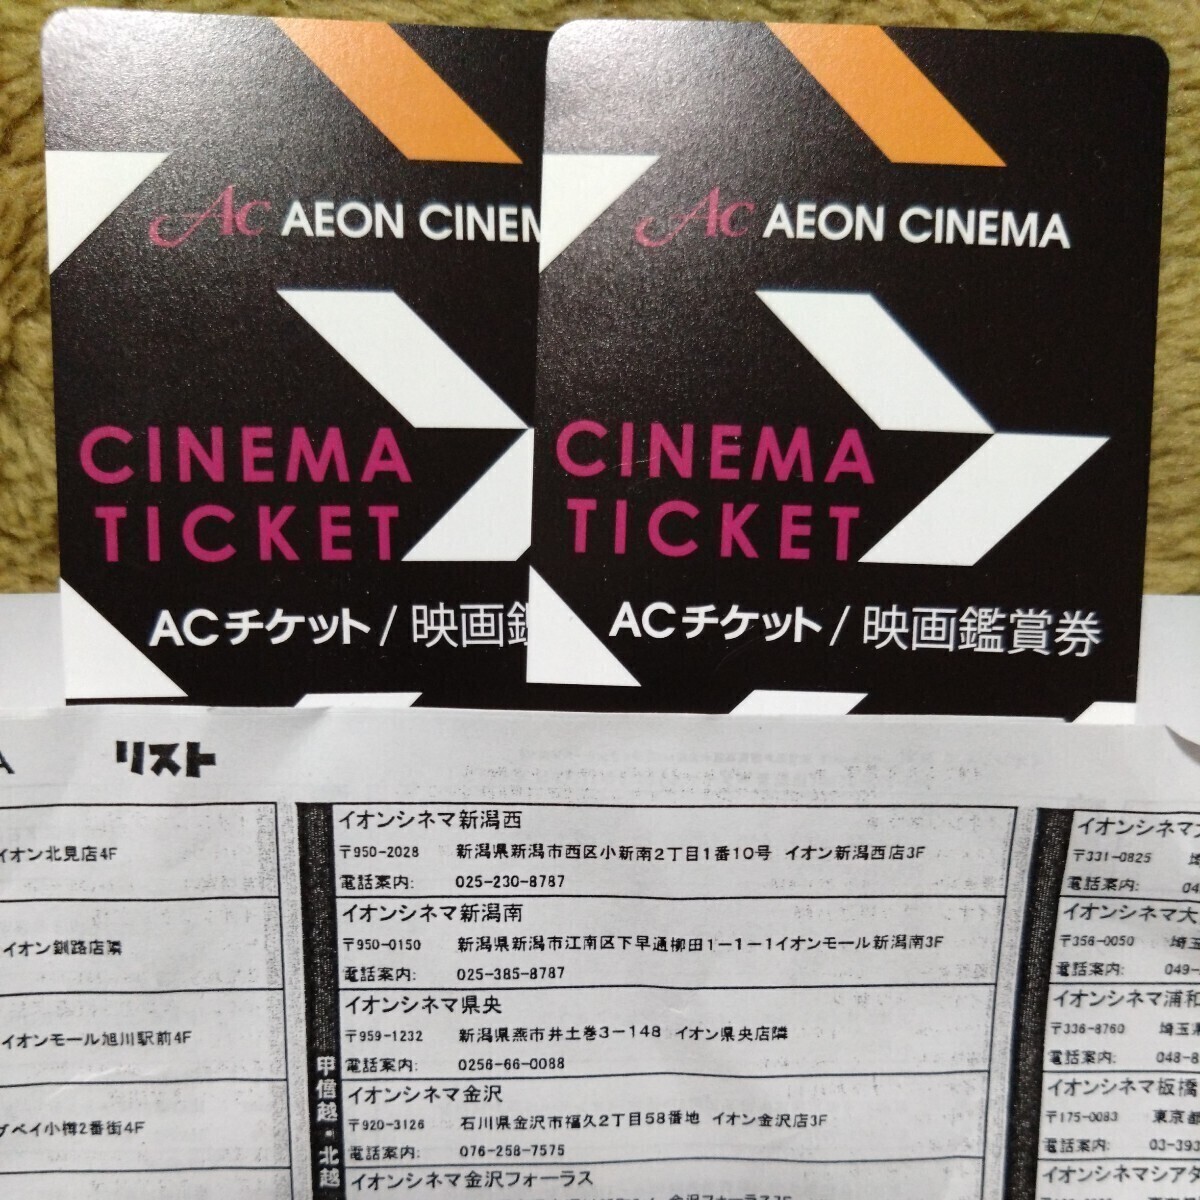 ACチケット 映画鑑賞券 イオンシネマ シネマチケットの画像1